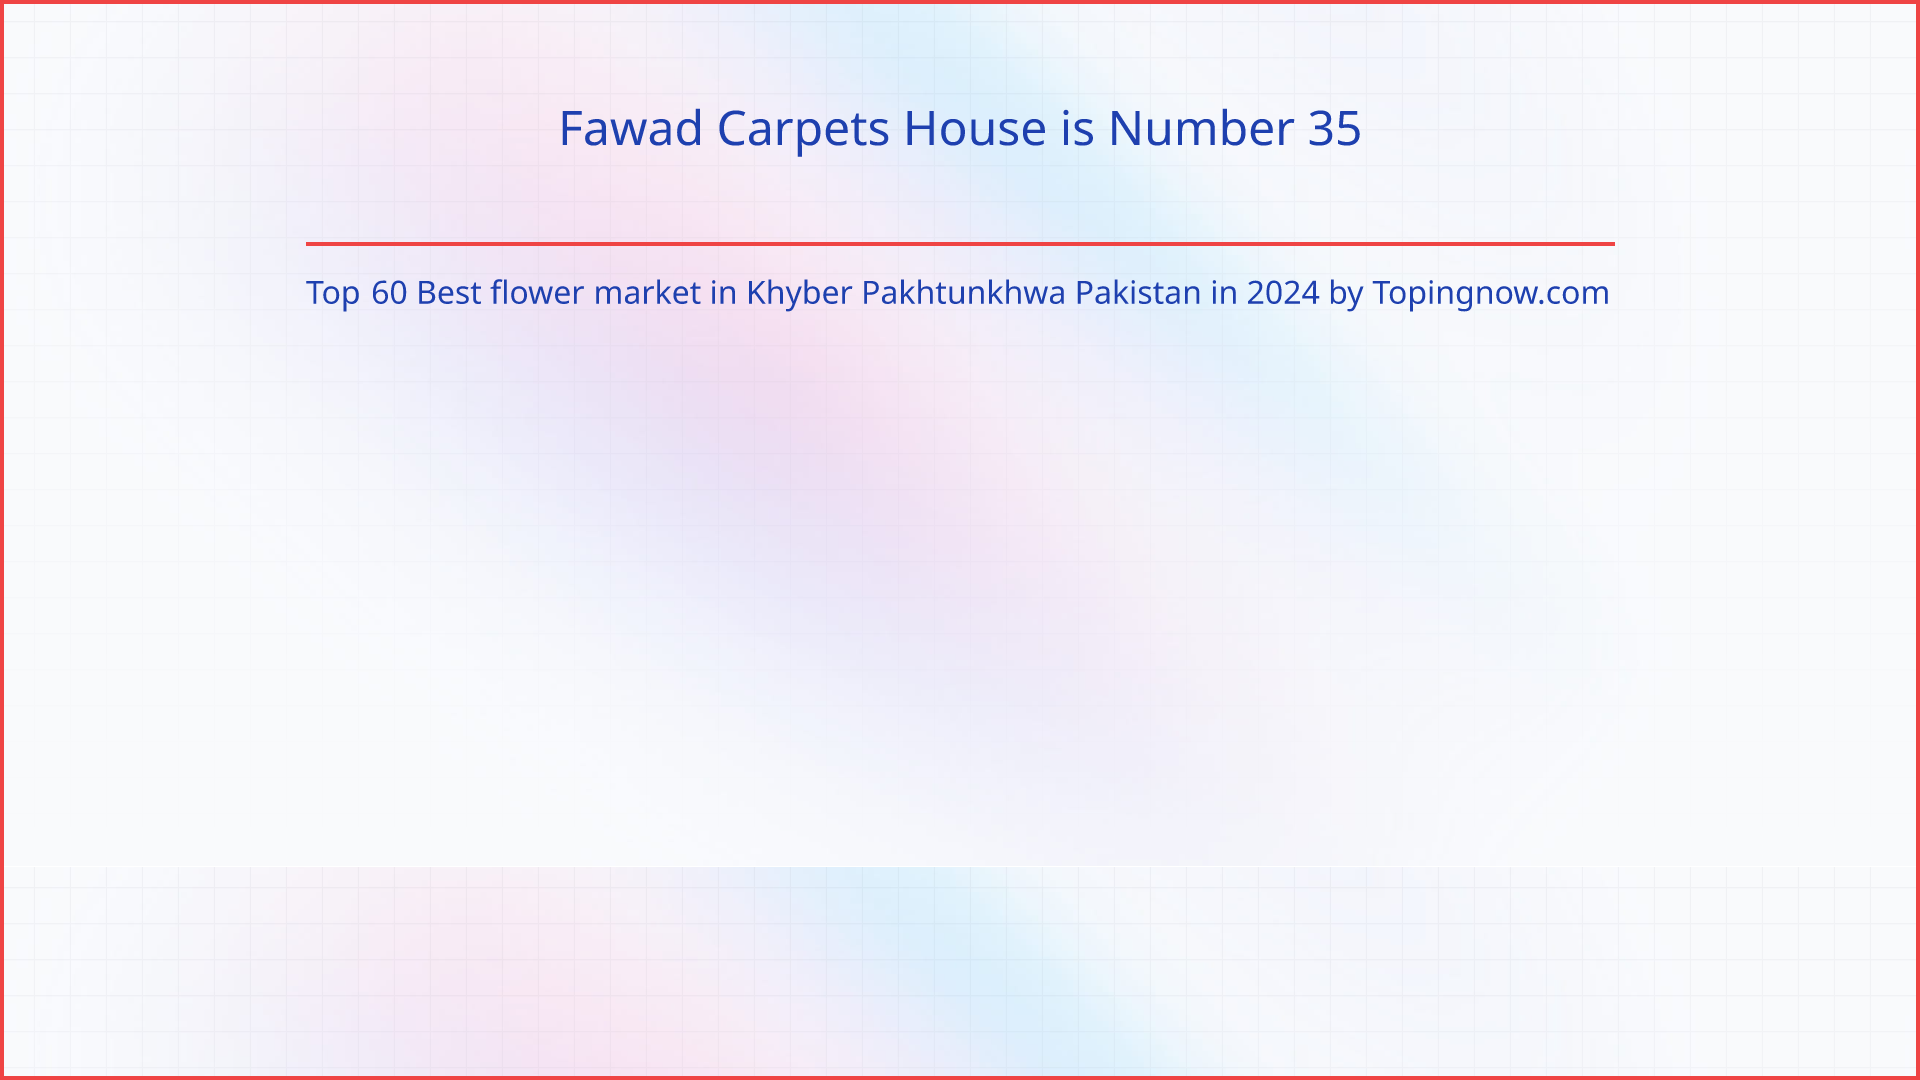 Fawad Carpets House: Top 60 Best flower market in Khyber Pakhtunkhwa Pakistan in 2024